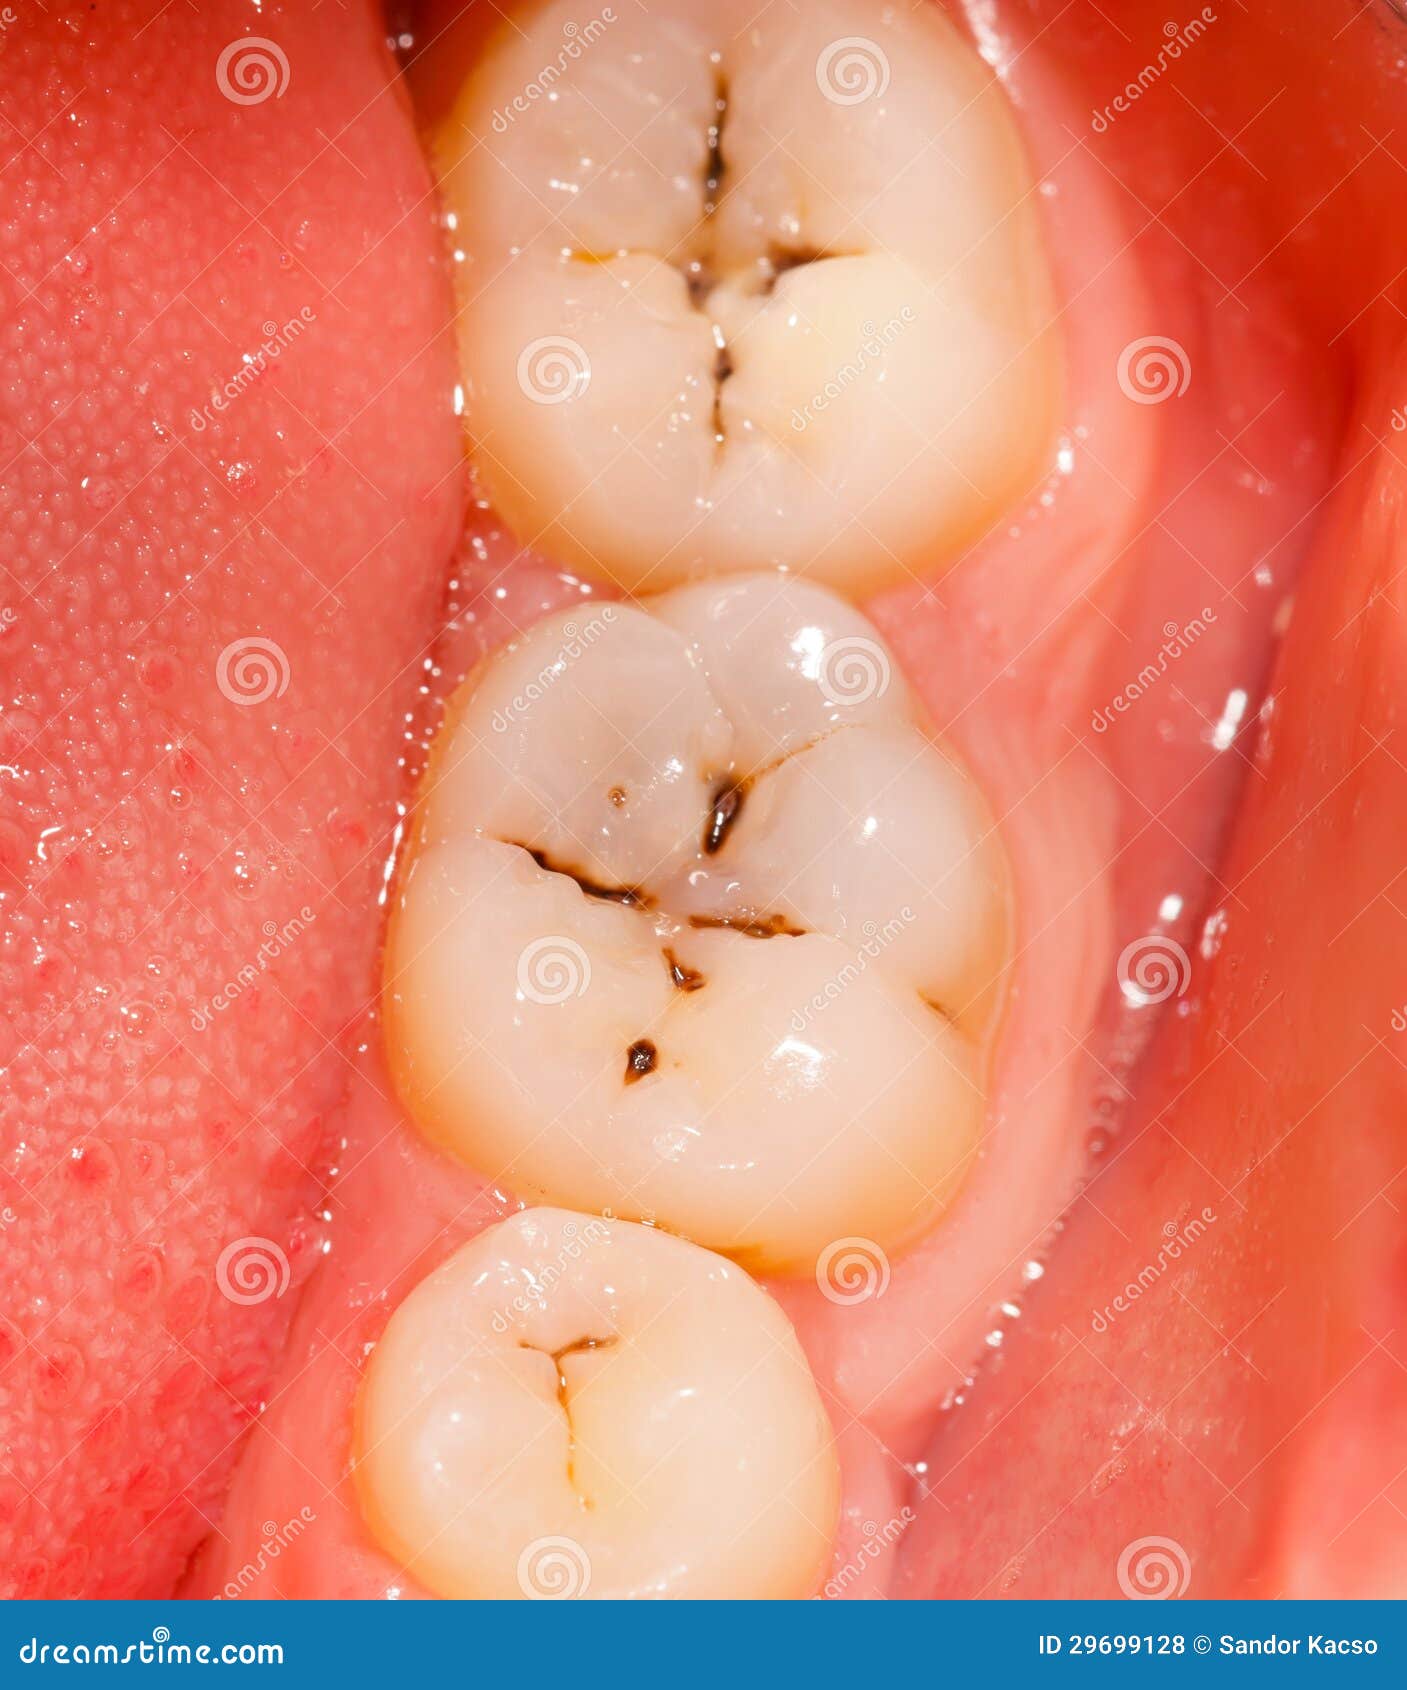 cavity and teeth